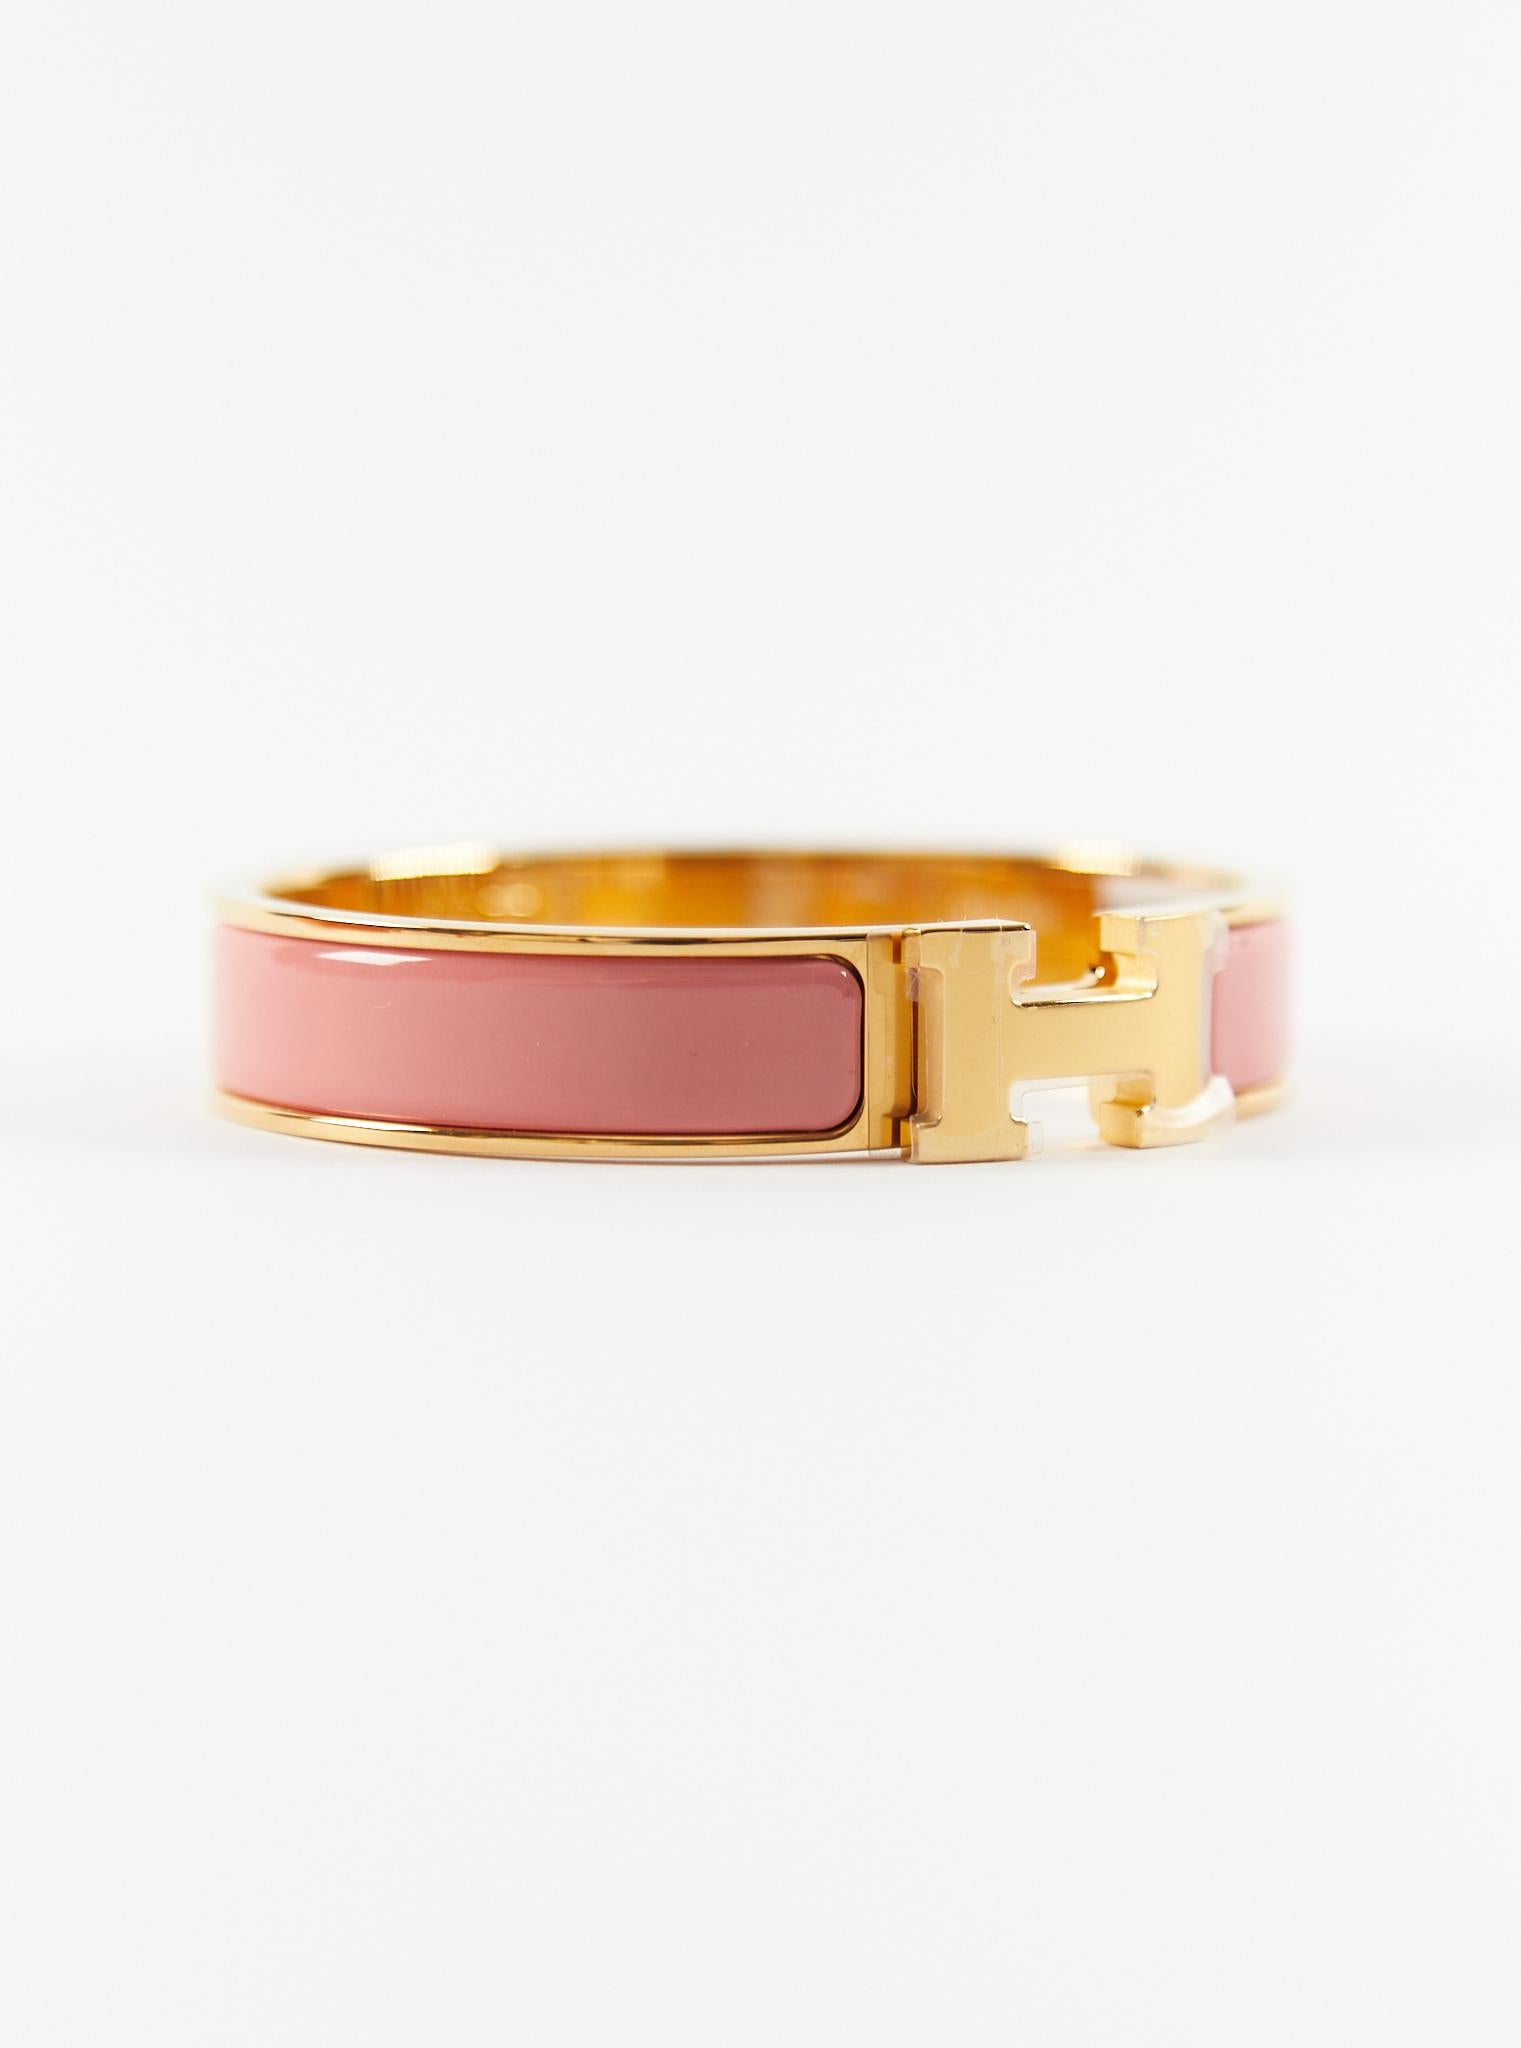 Hermès Clic H PM-Armband aus Papaye und Gold

Größe des Handgelenks: 16.8 cm  Breite: 12 mm

Hergestellt in Frankreich

